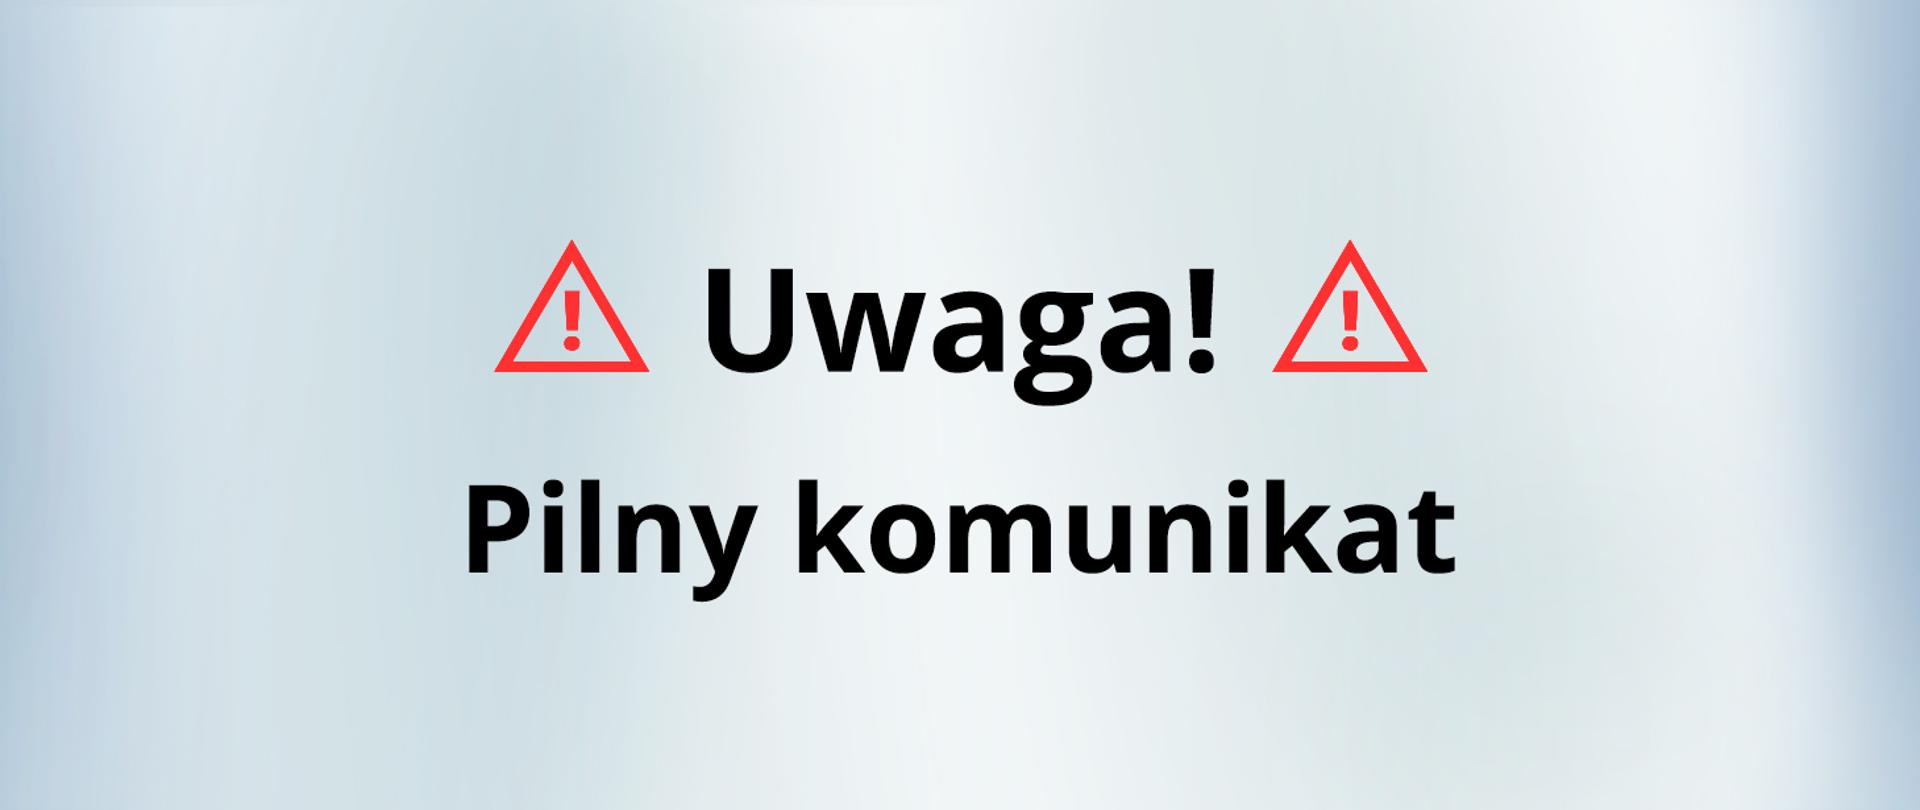 UWAGA - pilny komunikat